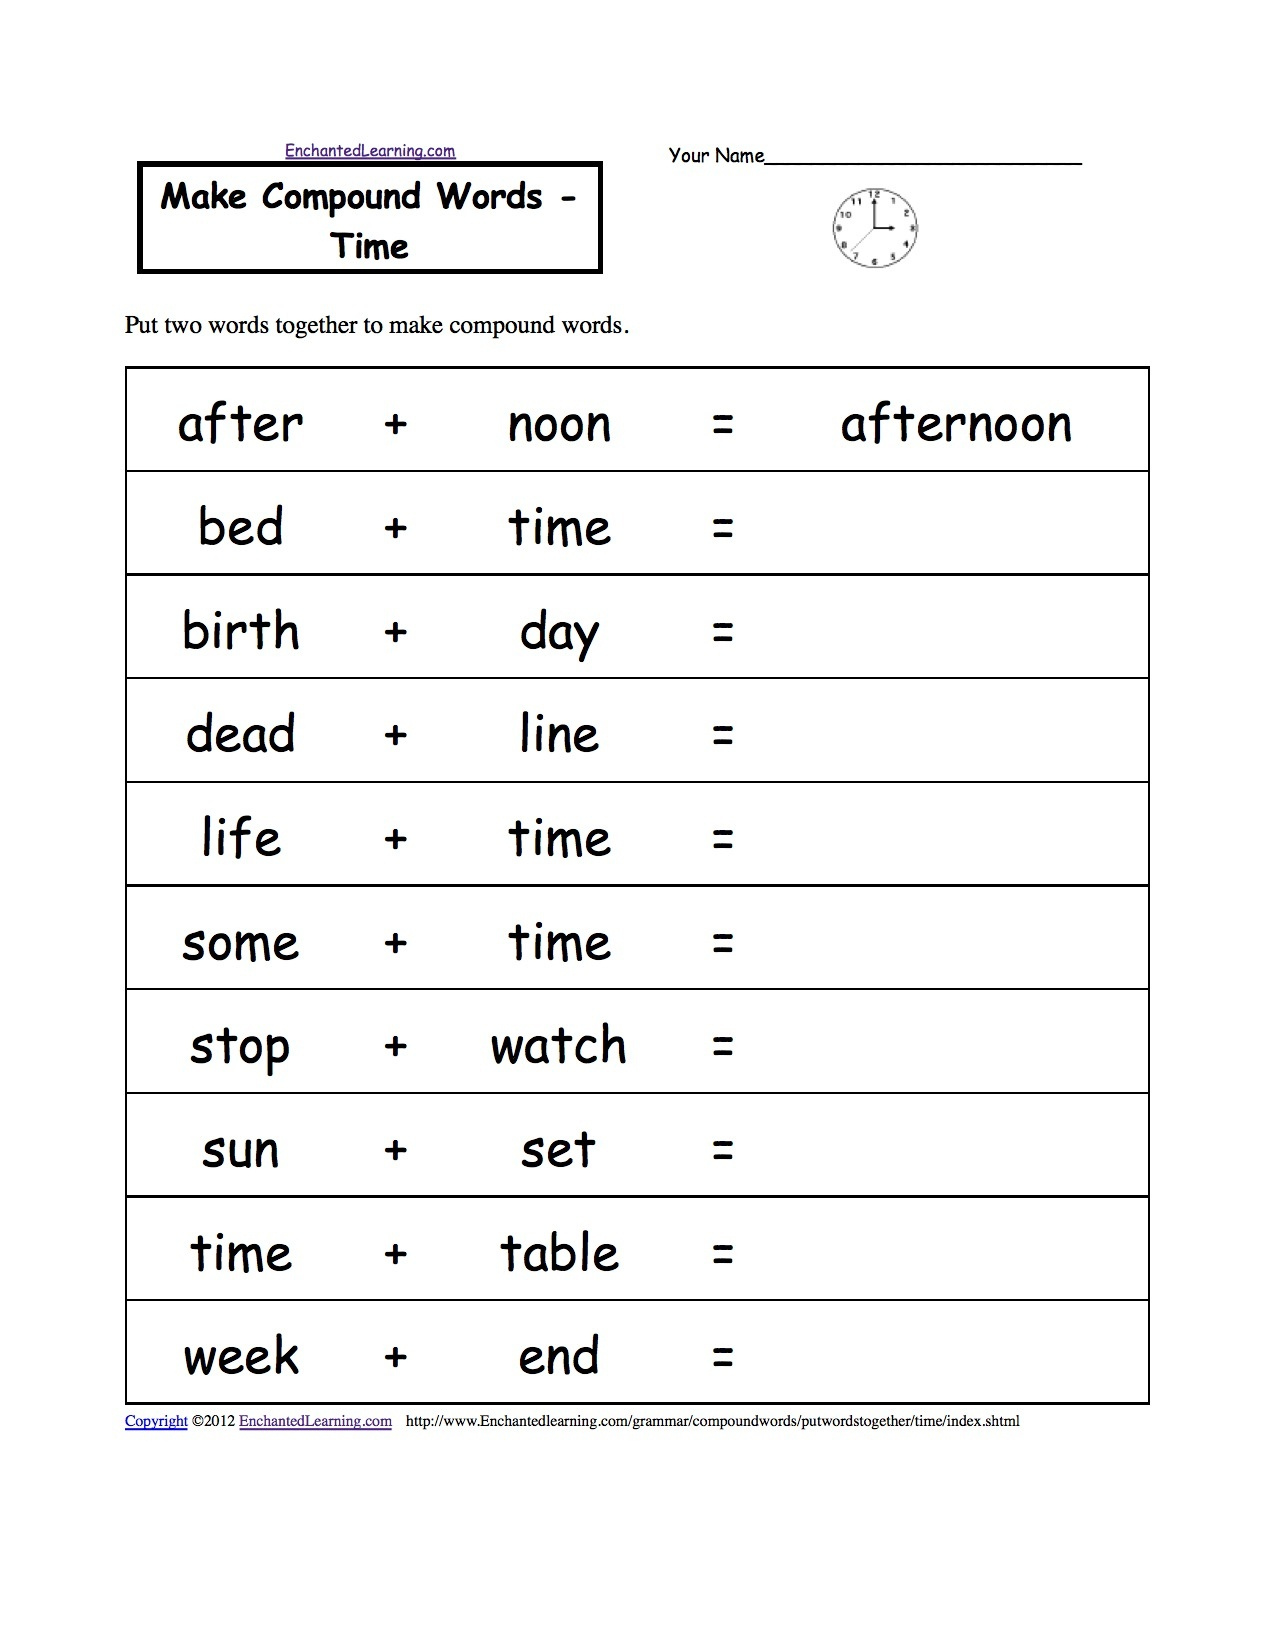 english-second-language-free-worksheets-language-worksheets